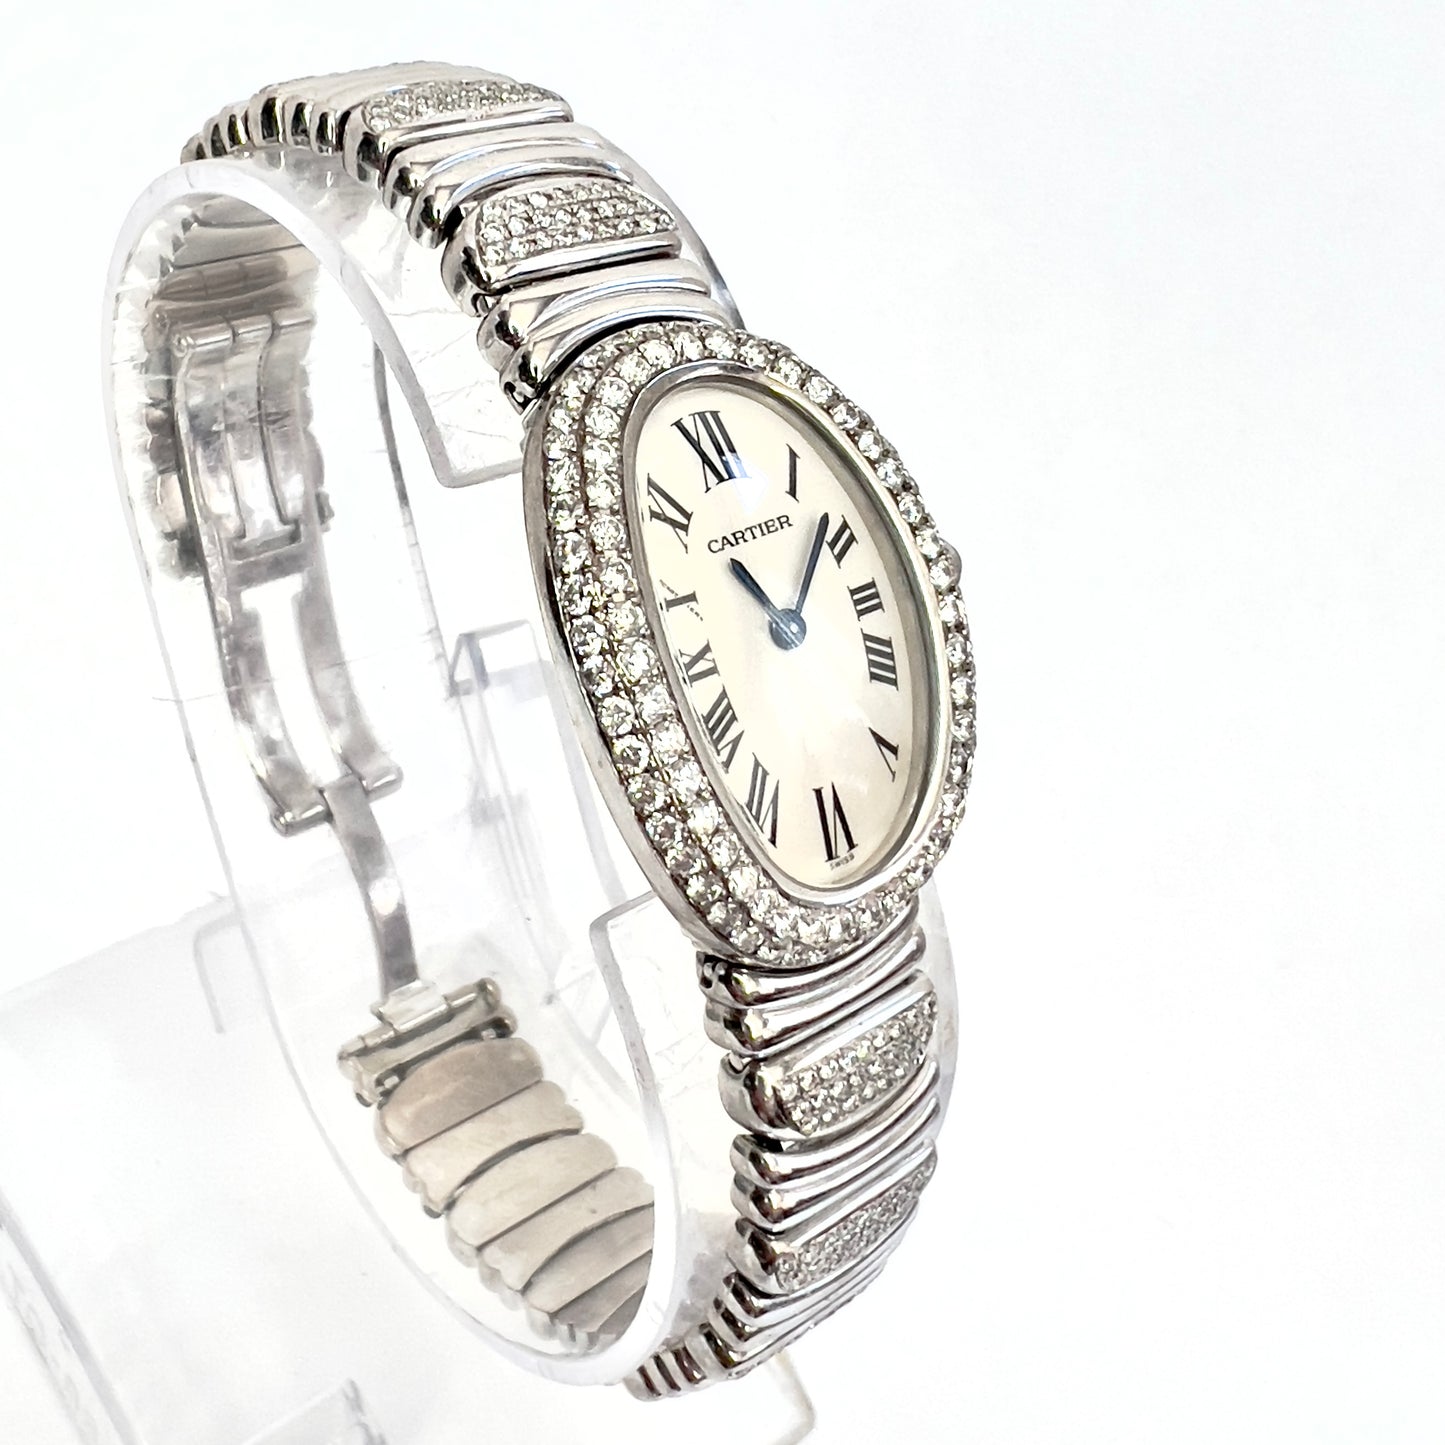 CARTIER BAIGNOIRE 22mm Quartz 18K White Gold 2.86TCW Diamond Watch